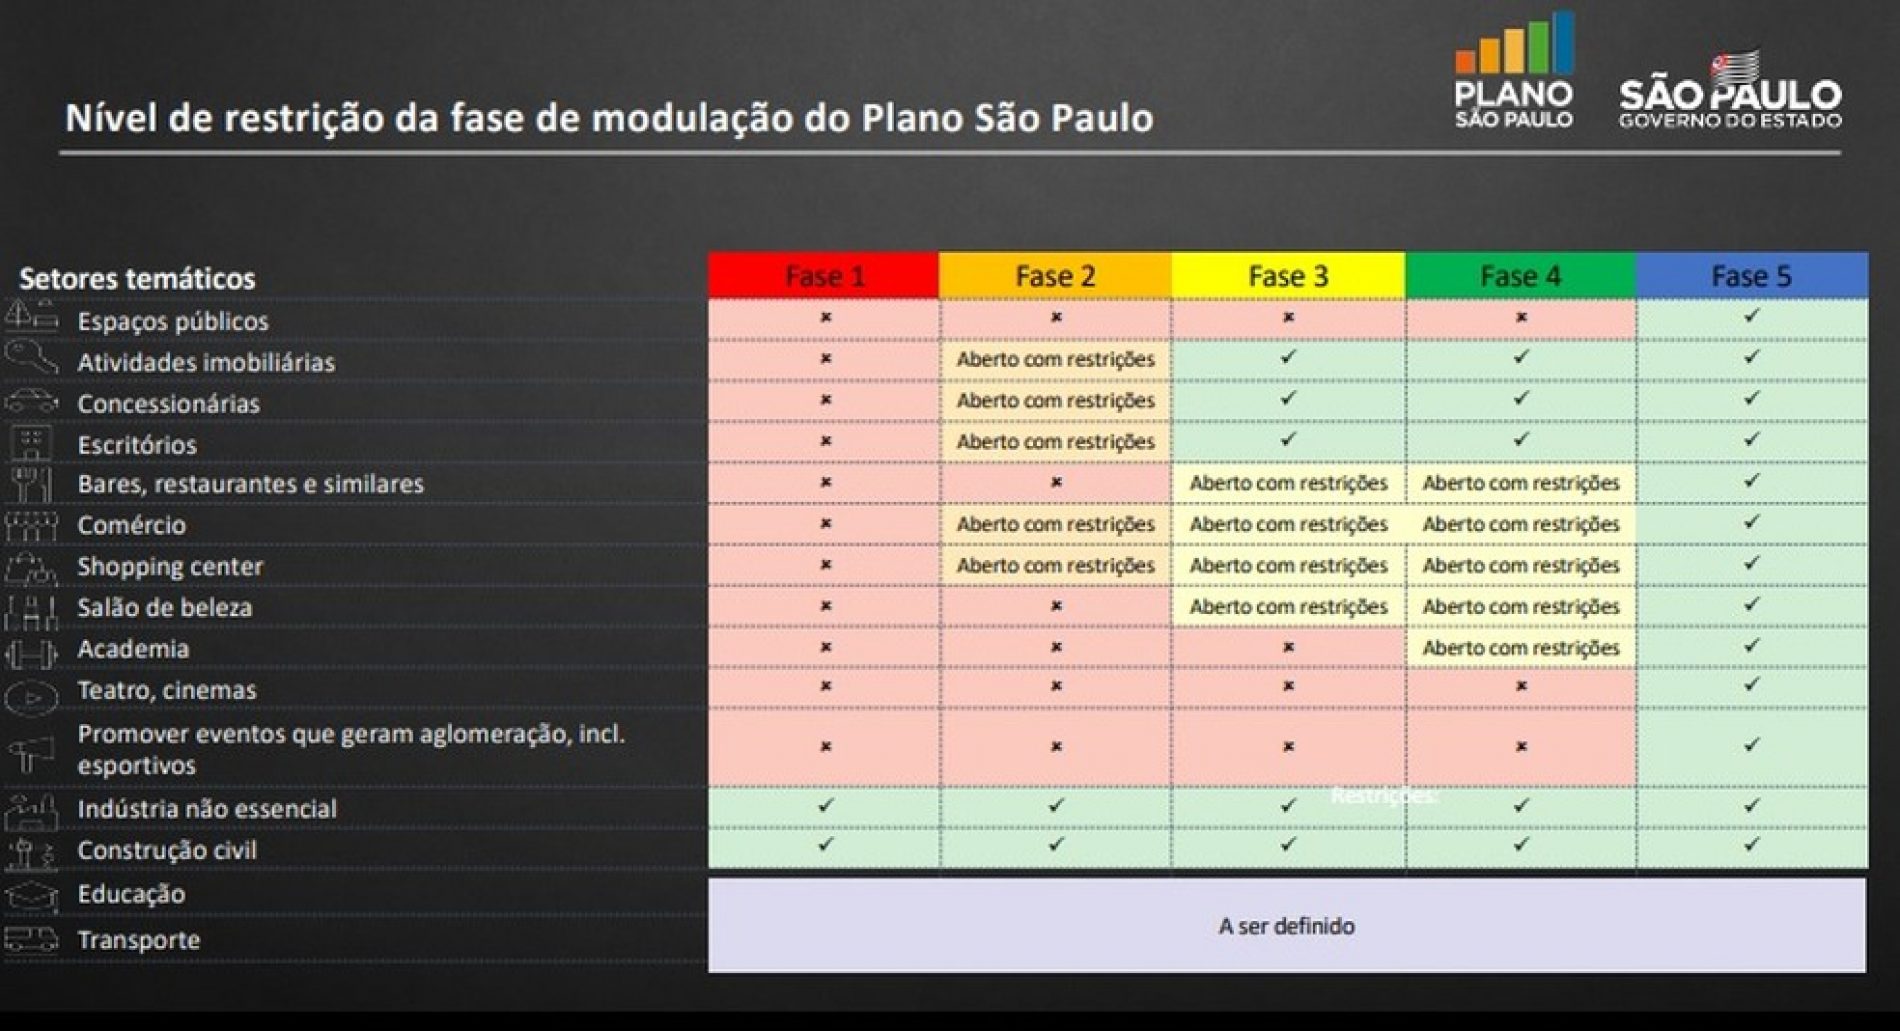 Governo de SP anuncia nesta sexta-feira (26) nova classificação das regiões de Barretos, Franca e Ribeirão Preto